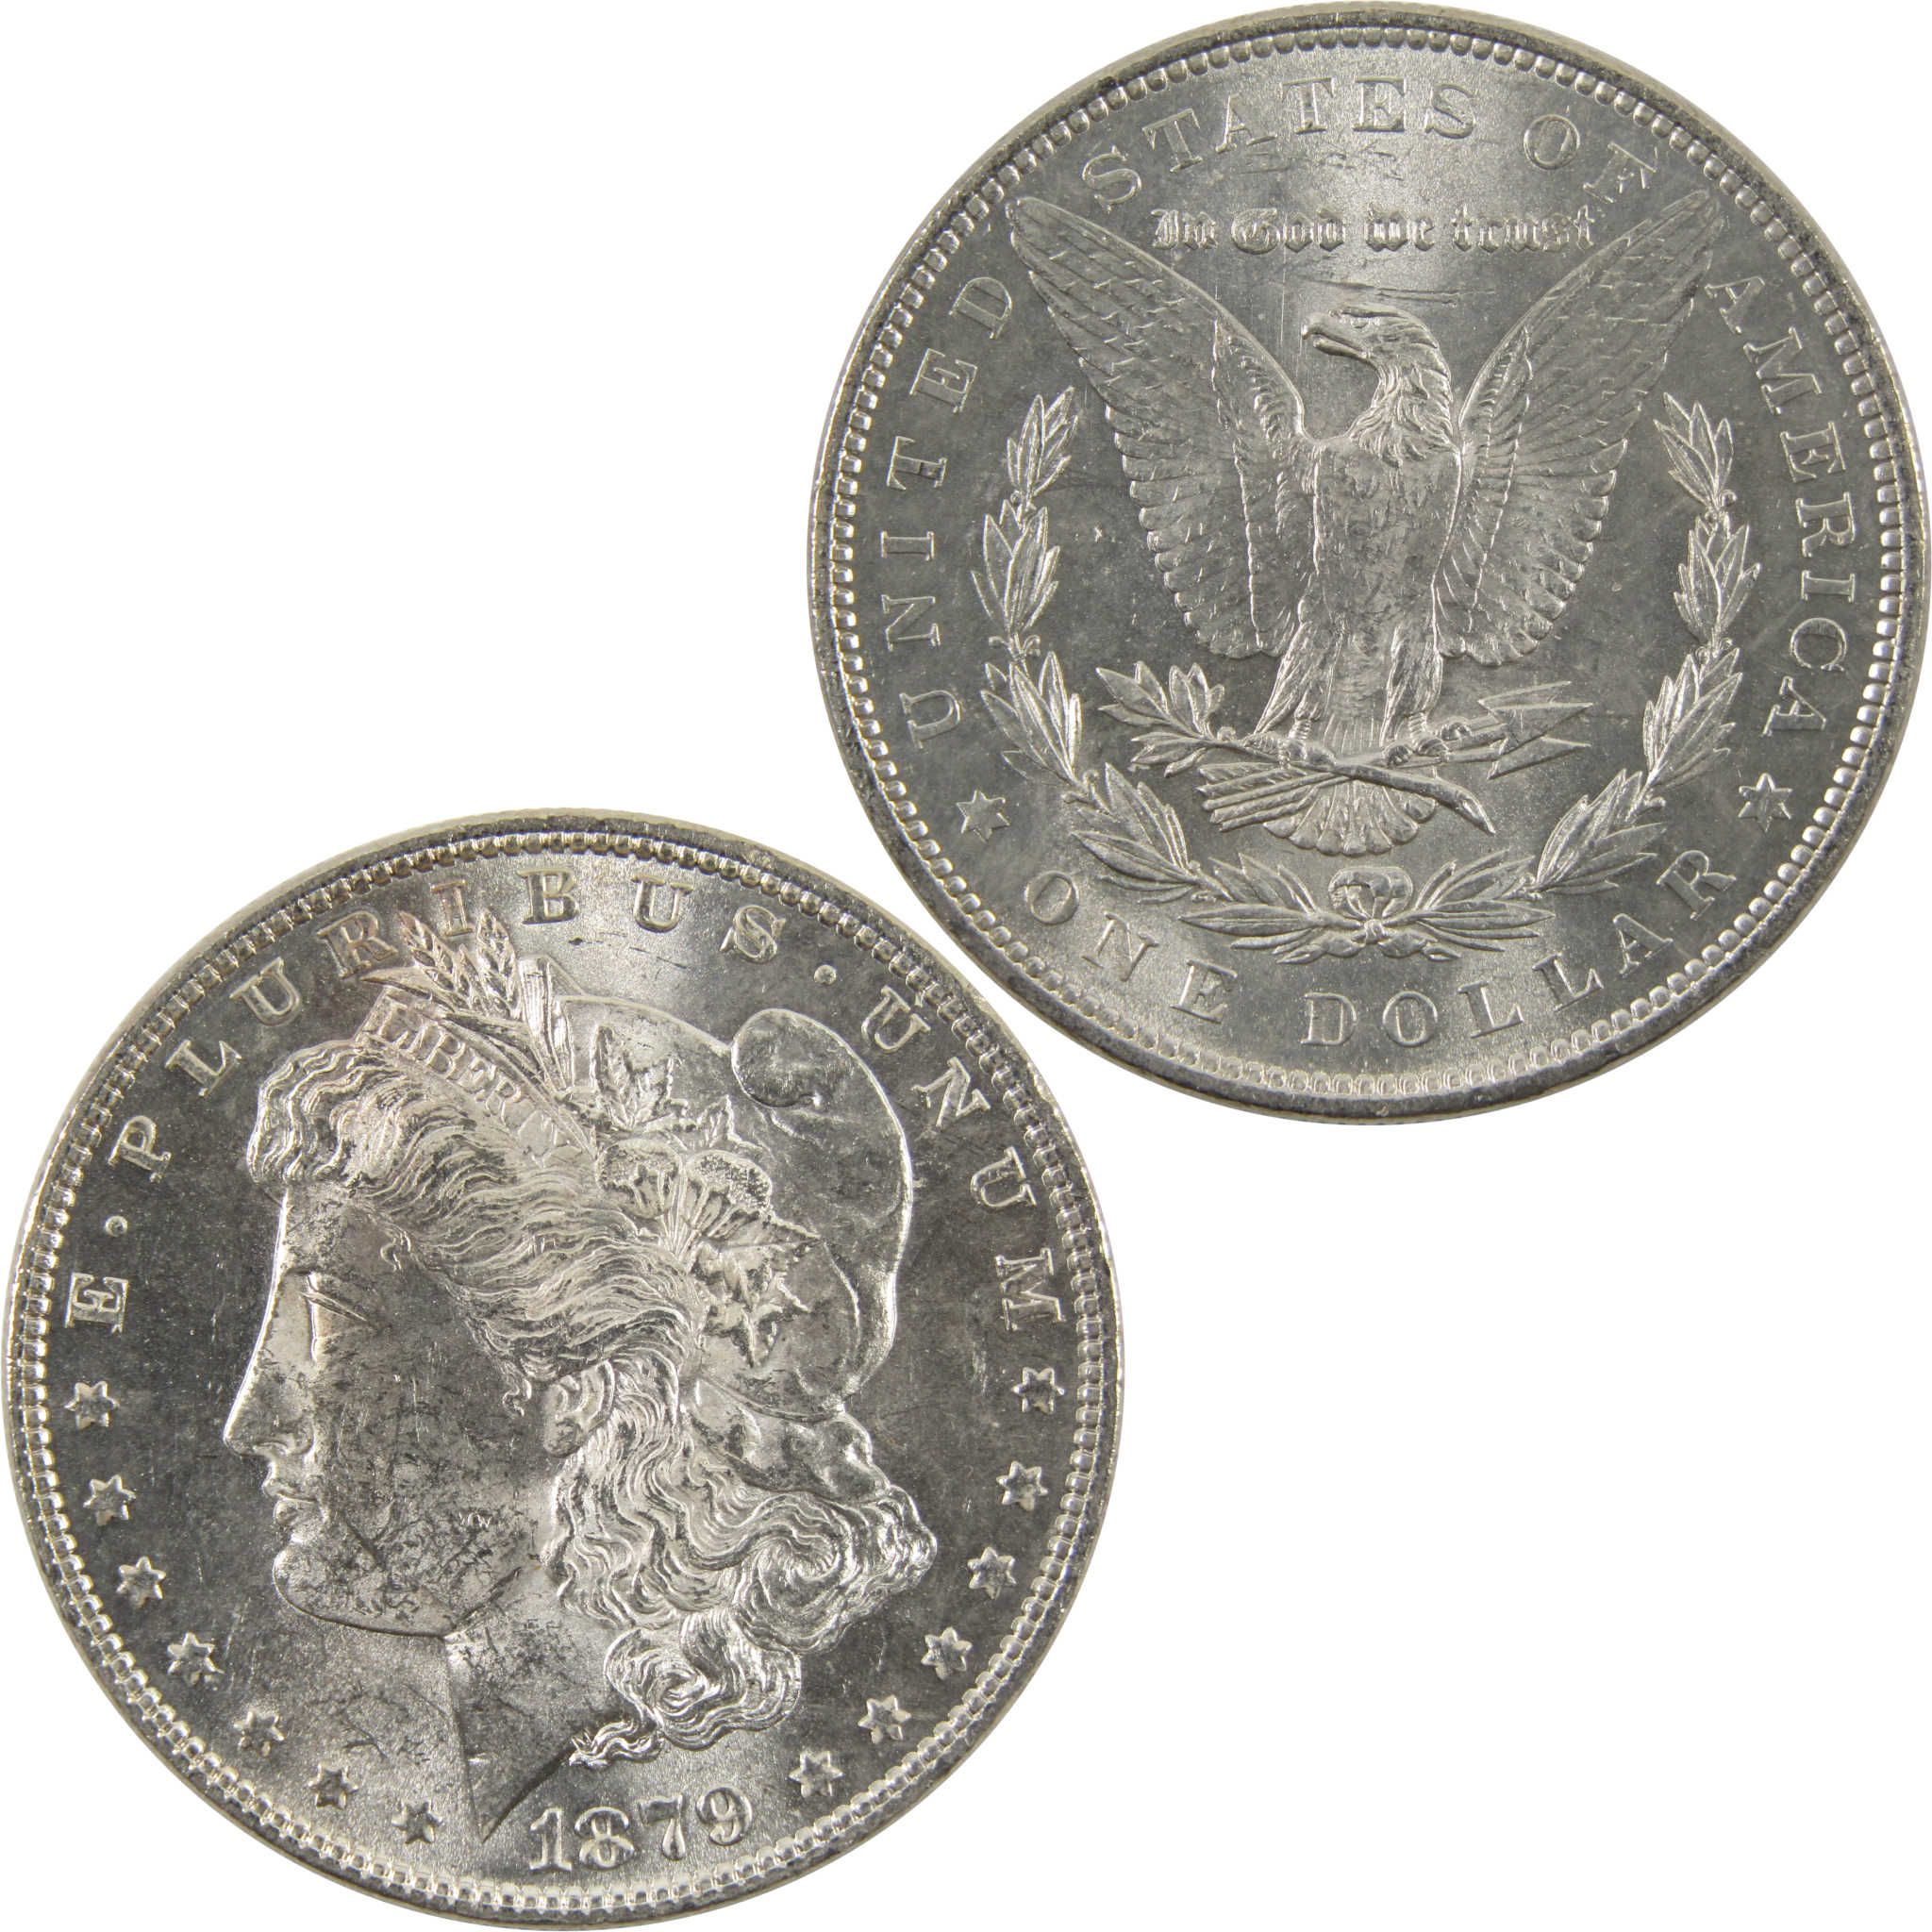 1879 Morgan Dollar BU Uncirculated 0.9 Silver $1 Coin SKU:I10312 - Morgan coin - Morgan silver dollar - Morgan silver dollar for sale - Profile Coins &amp; Collectibles